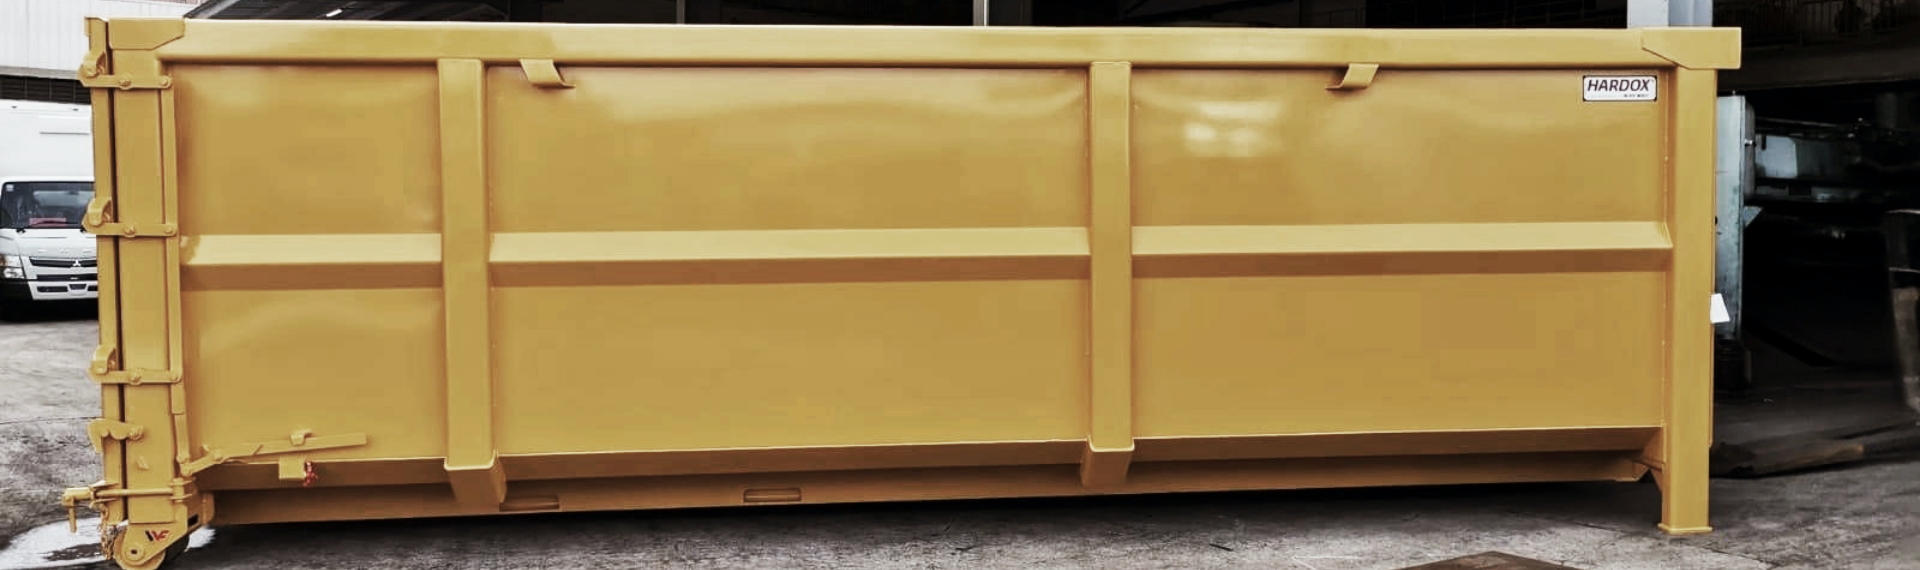 Hardox® HiAce çelikten yapılmış mdoern bir sarı çelik atık konteyneri.